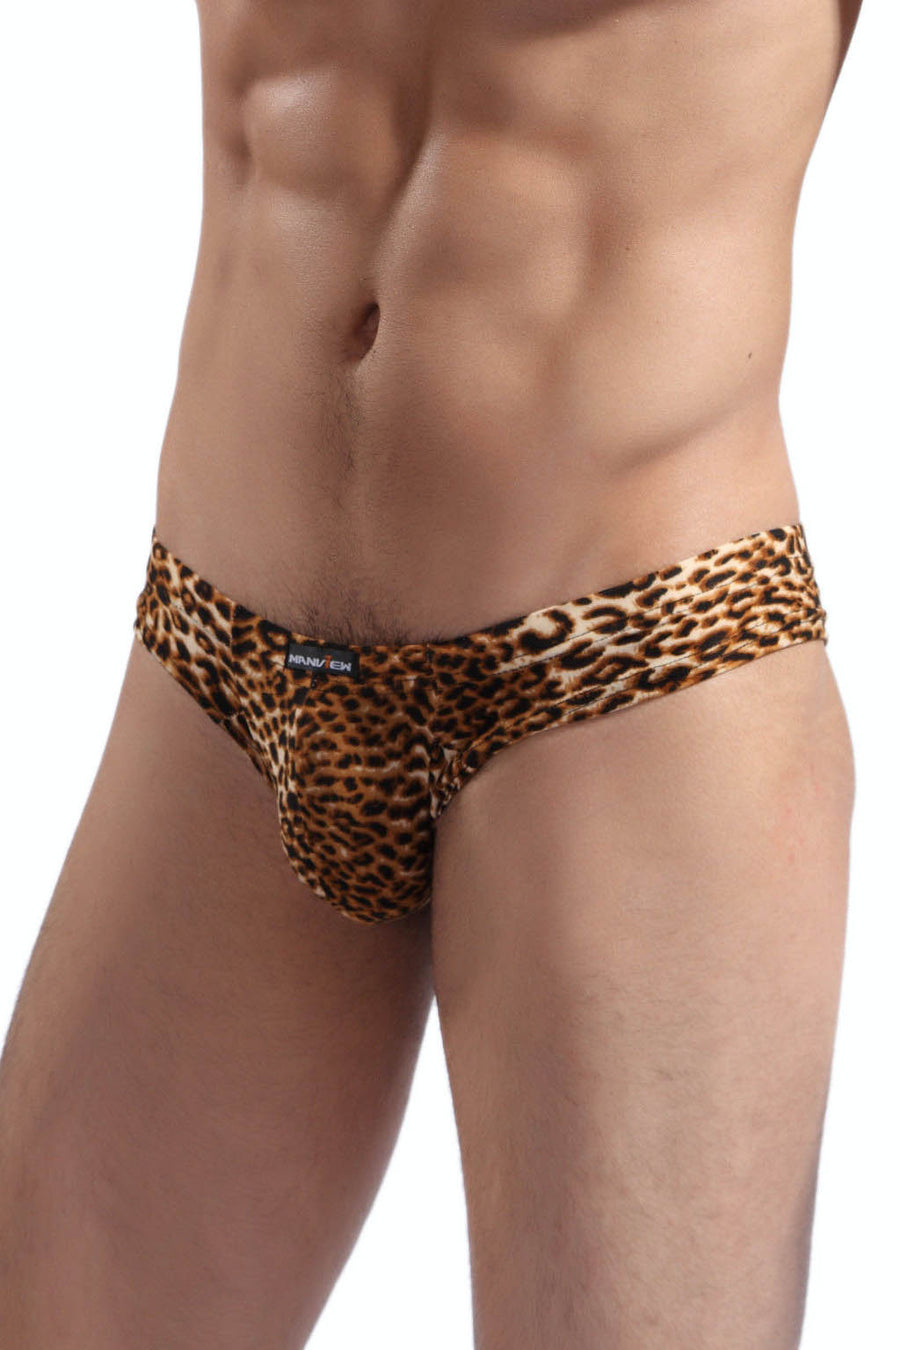 Manview Leopard Print Brazilian Cut Lowrise Underwear